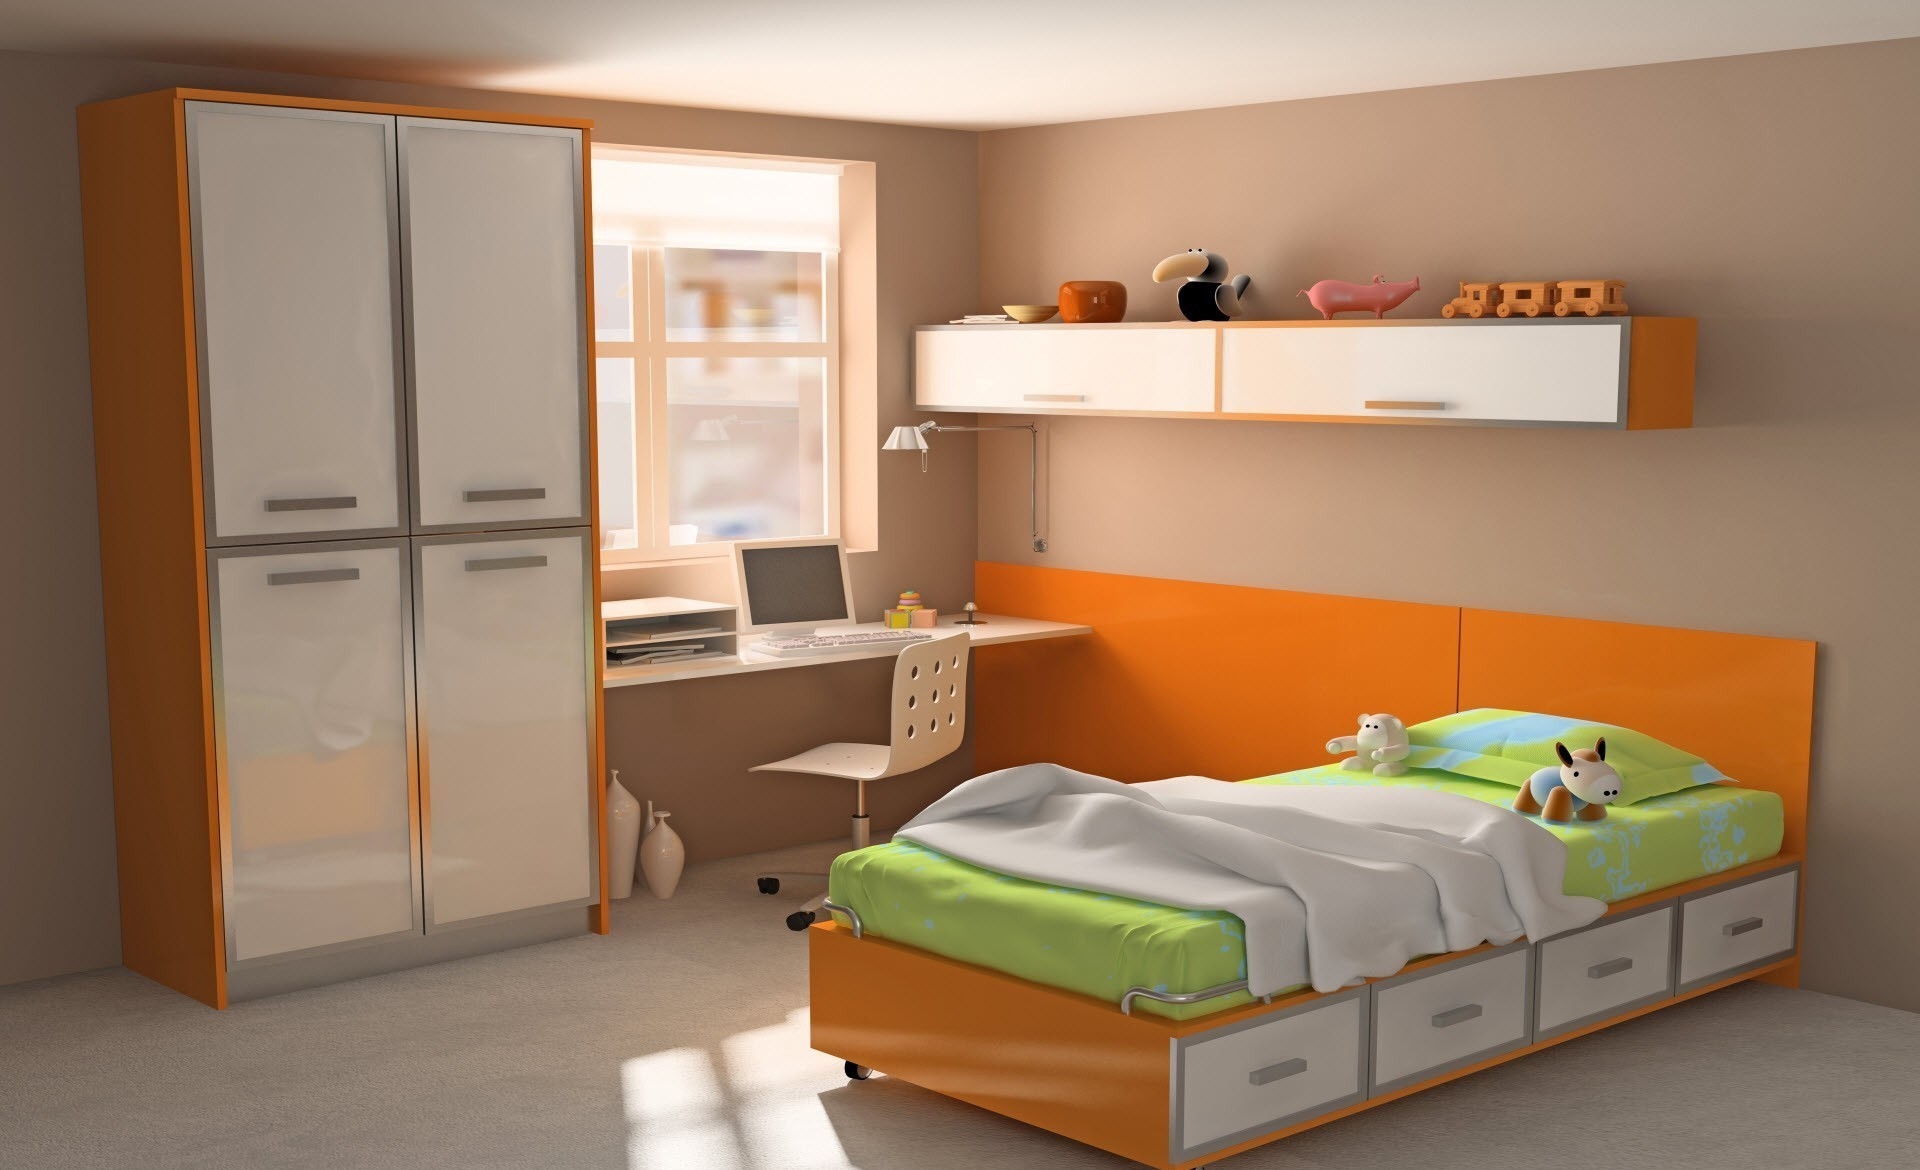 122318 скачать обои комната, квартира, оранжевые, компьютер, интерьер, игрушки, дизайн, разное, стол, оранжевый, стиль, ярко, кровать, шкаф, красочно - заставки и картинки бесплатно